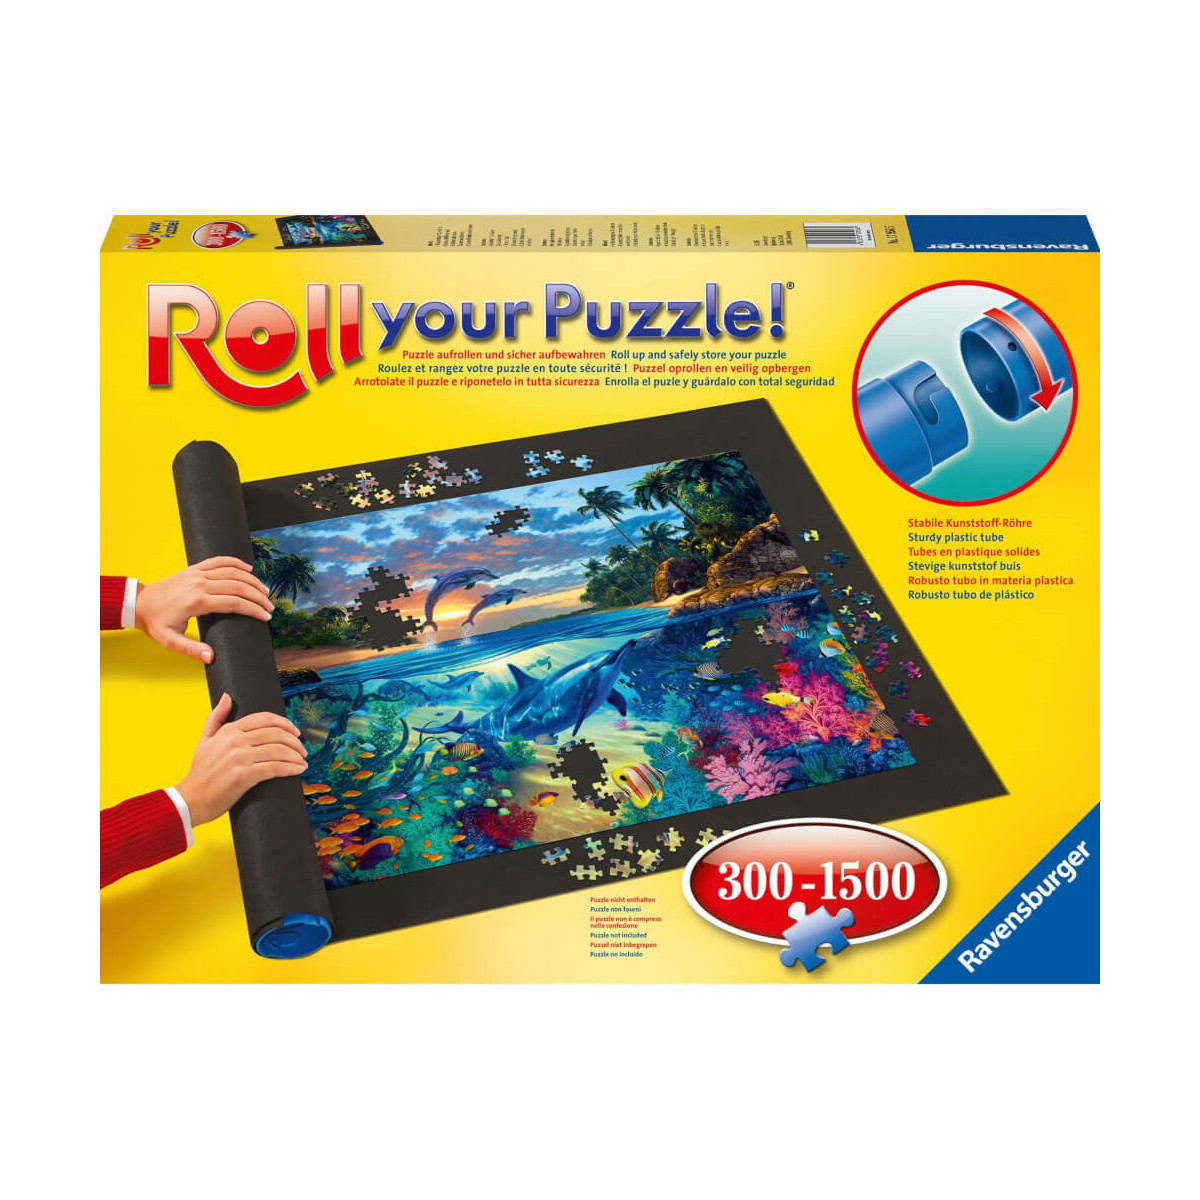 Ravensburger Roll your Puzzle   Puzzlematte für Puzzles mit bis zu 1000 Teilen, Puzzleunterlage zum